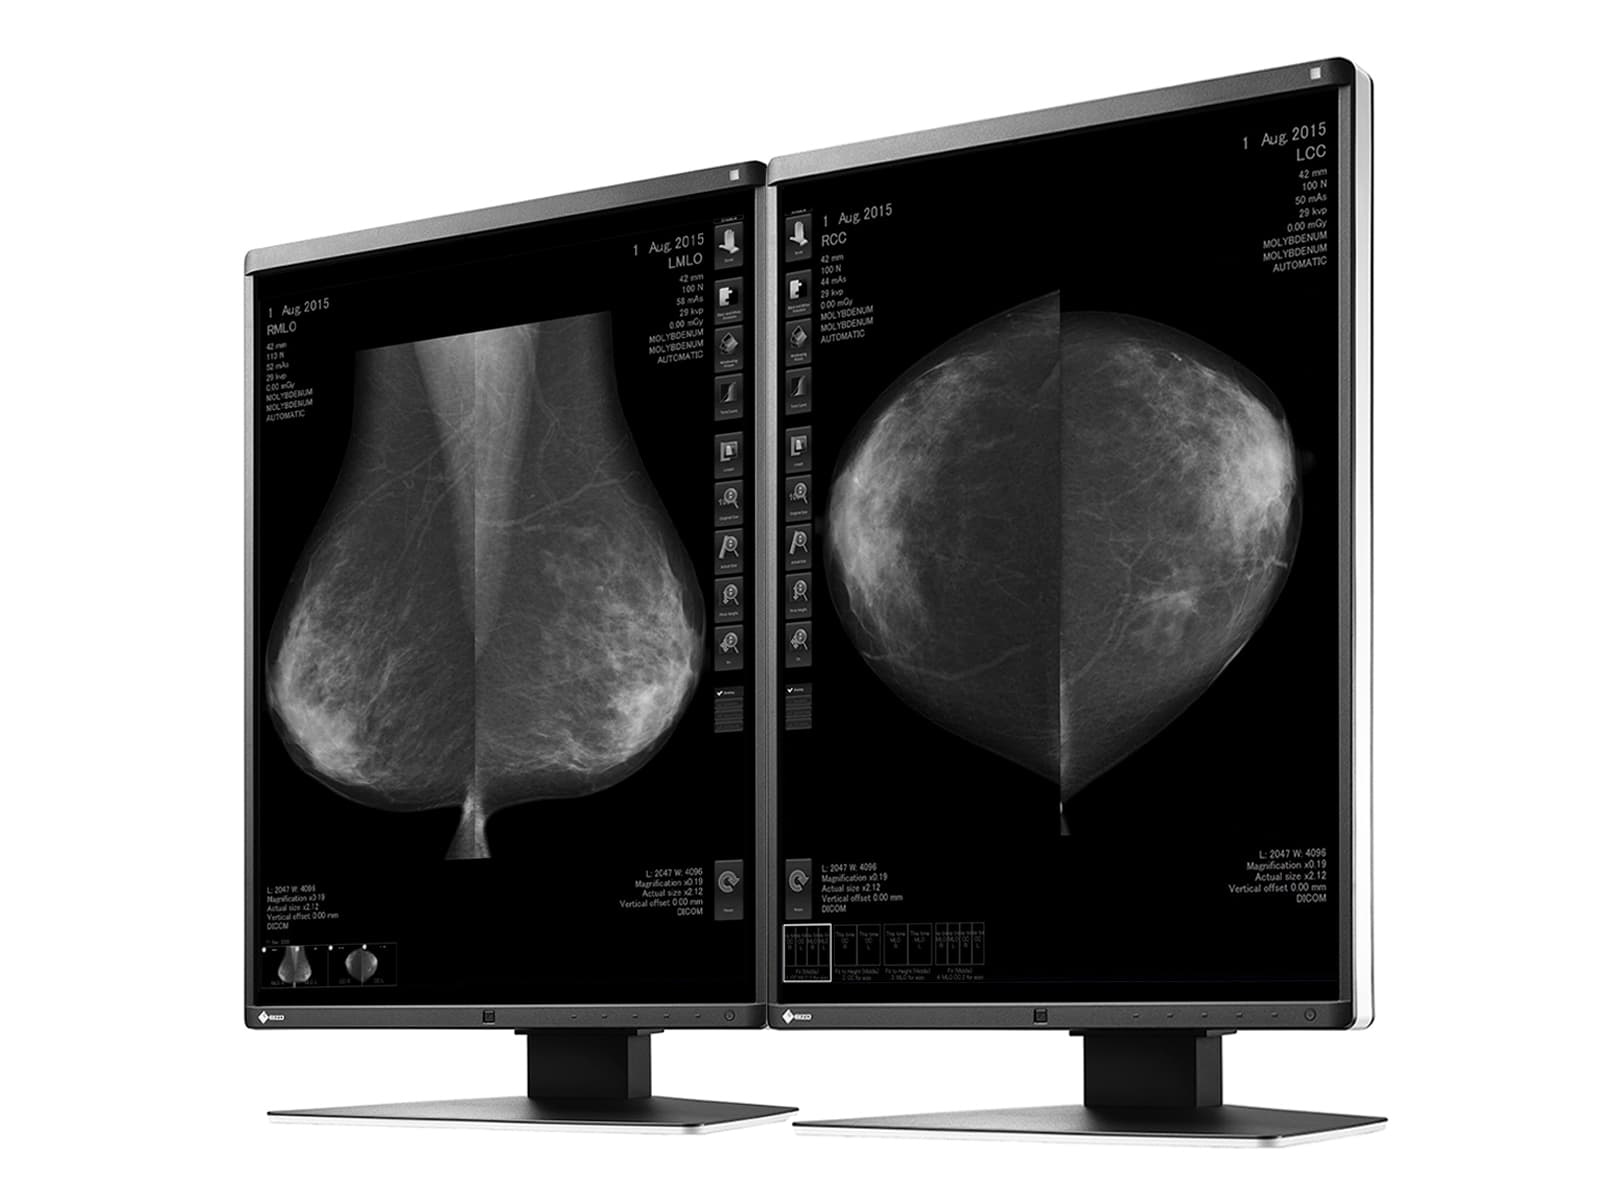 Moniteur d'imagerie mammaire Eizo RadiForce GX560 5MP 21" LED en niveaux de gris Mammo 3D-DBT (GX560-MD) Monitors.com